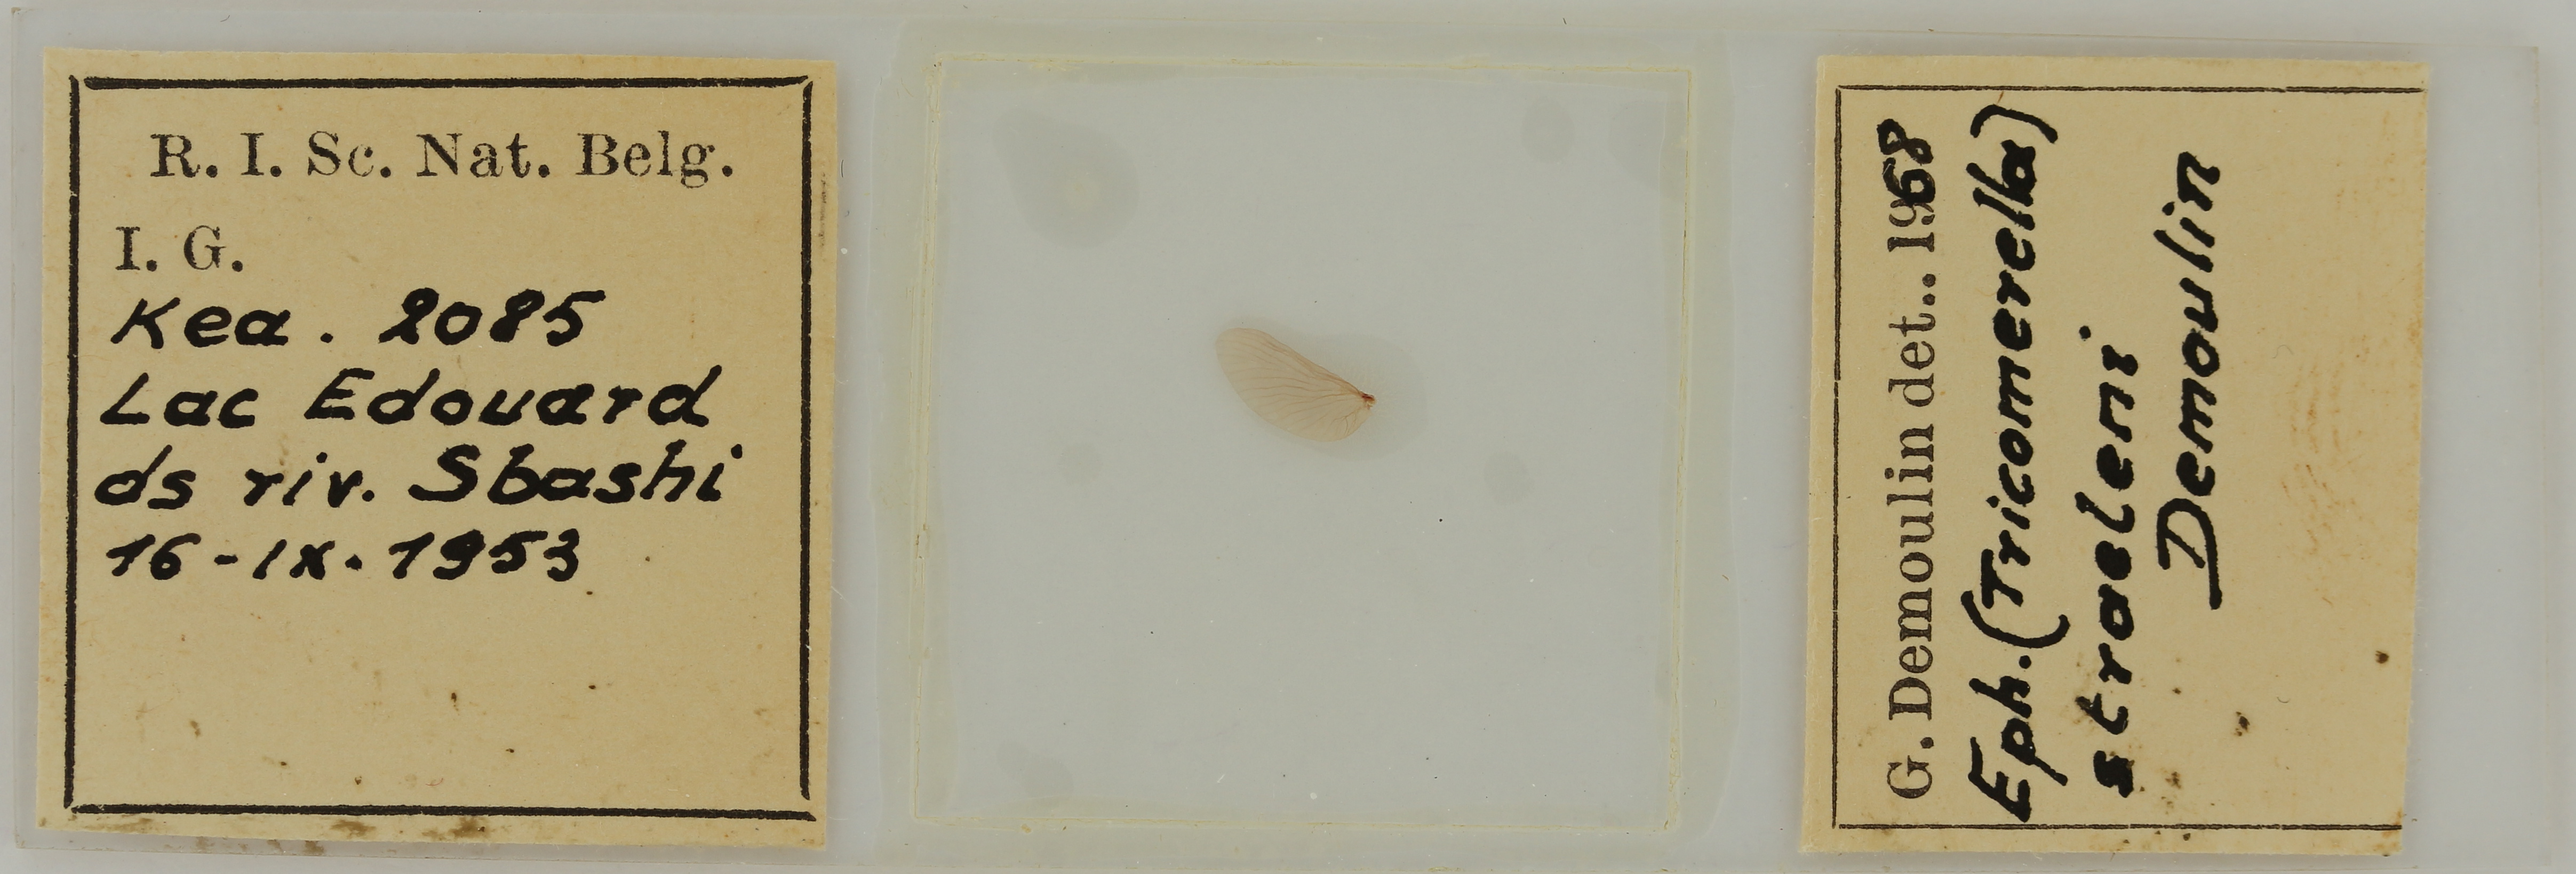 Ephemerythus (Tricomerella) straeleni s3G ht.JPG